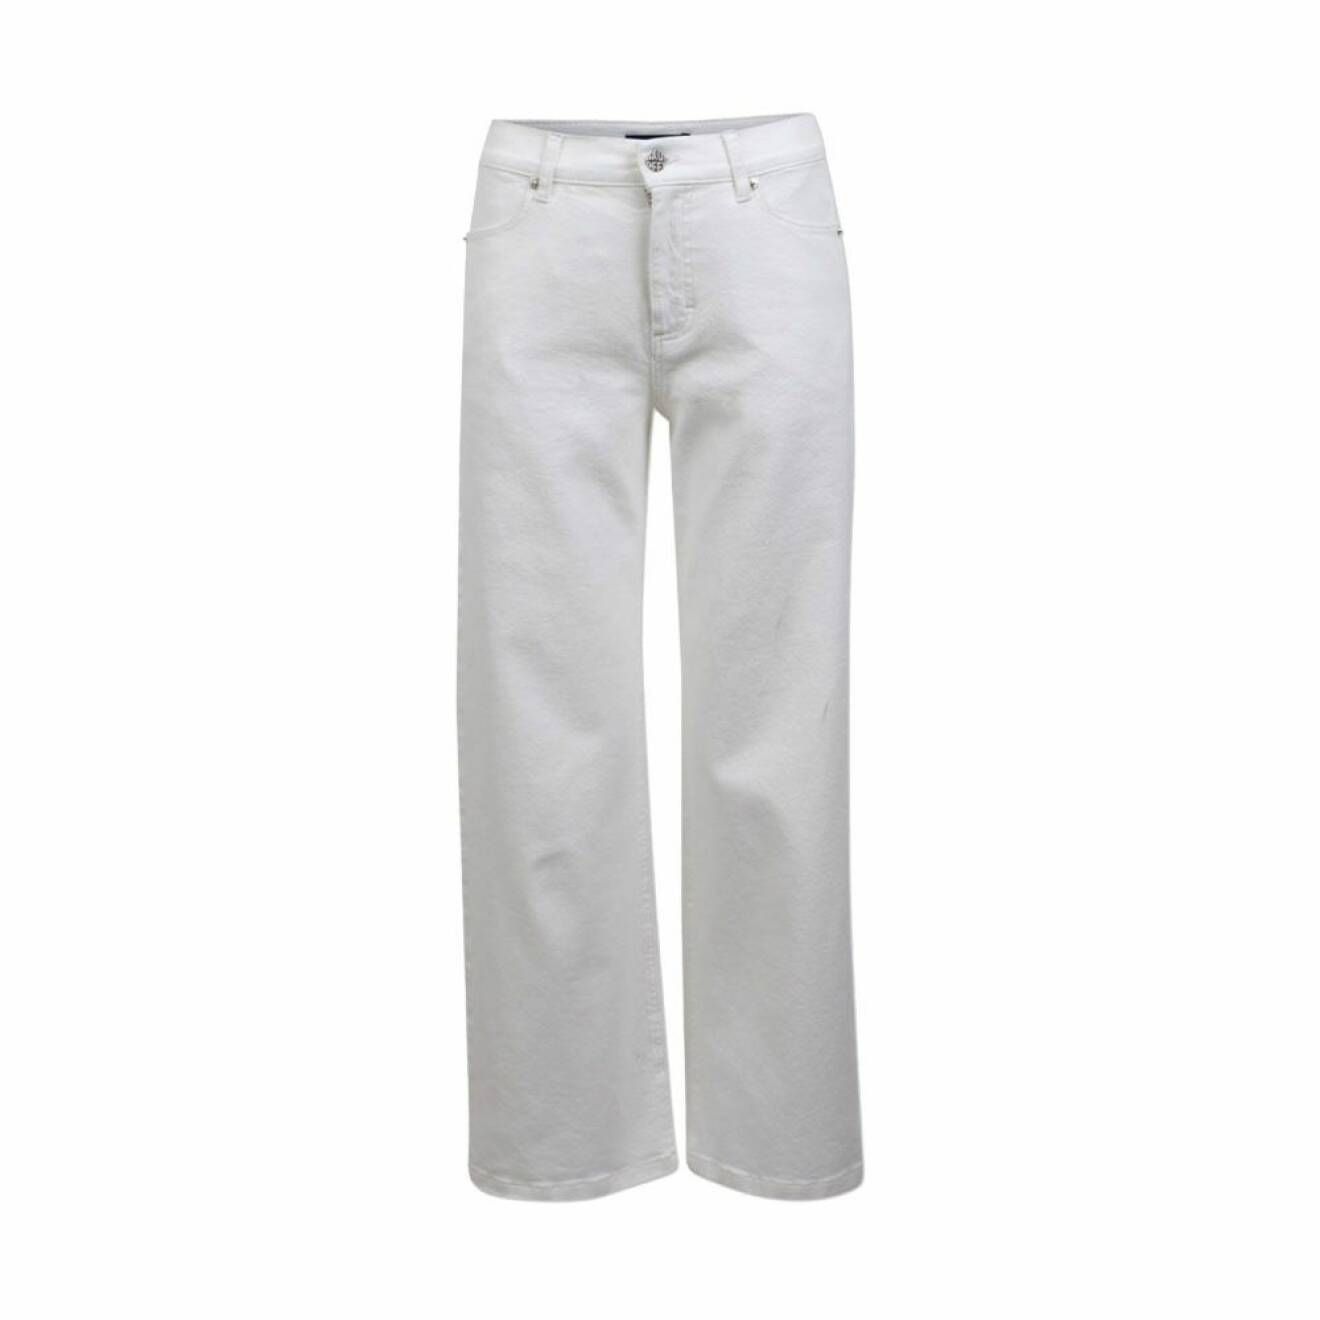 Vita jeans i lös, avslappnad modell från Baum und pferdgarten.